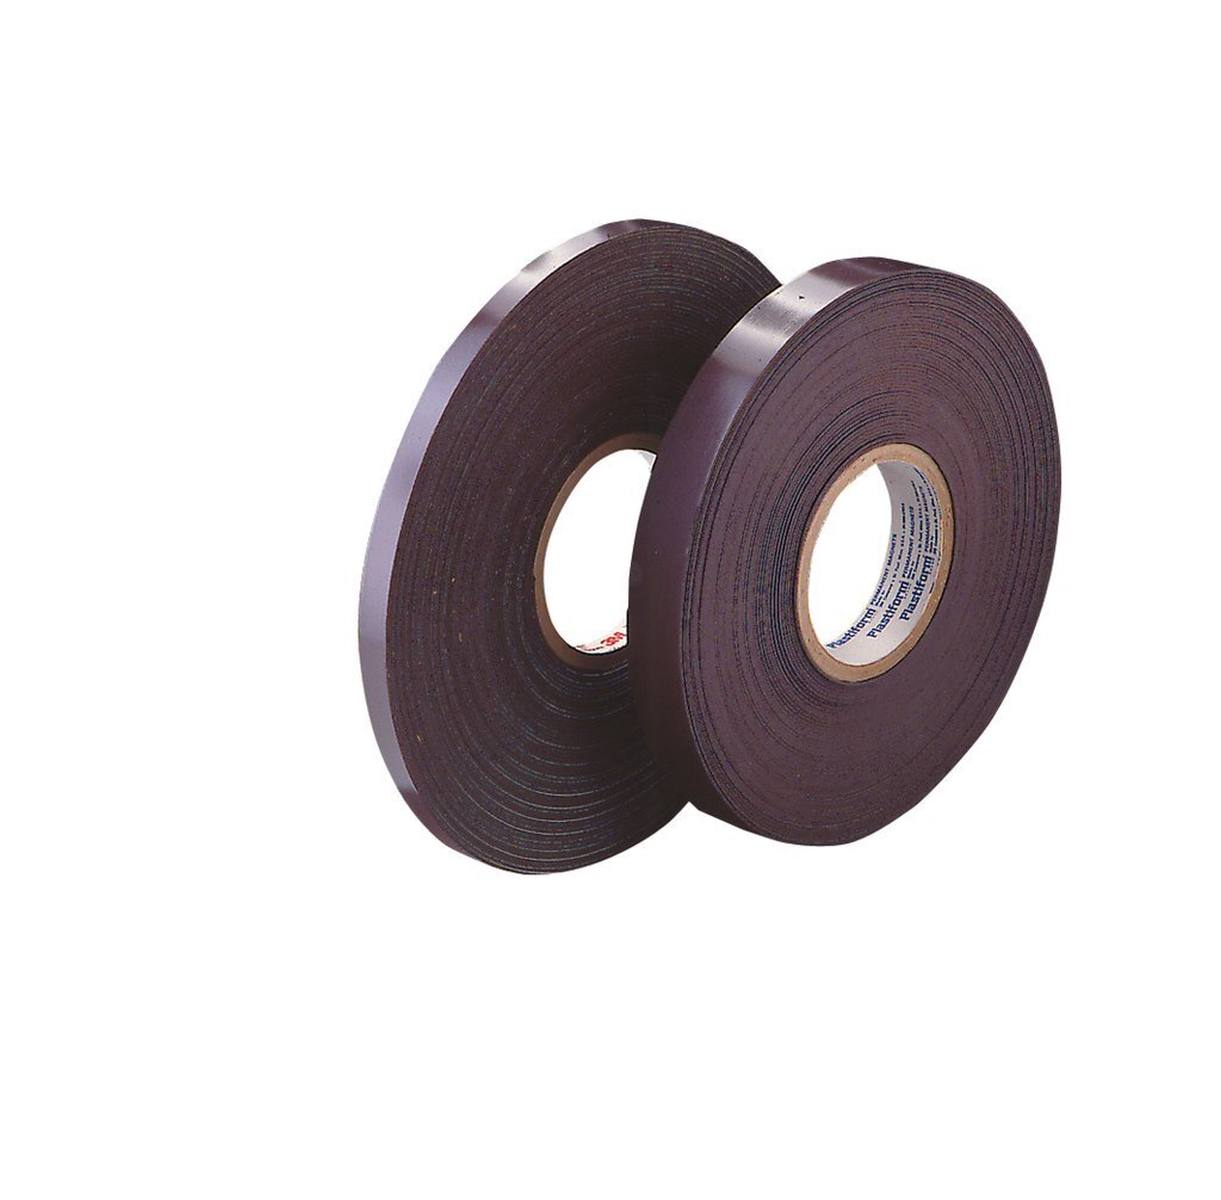 3M 1317 Nastro adesivo magnetico, marrone, 25 mm x 30,5 m, 1,5 mm